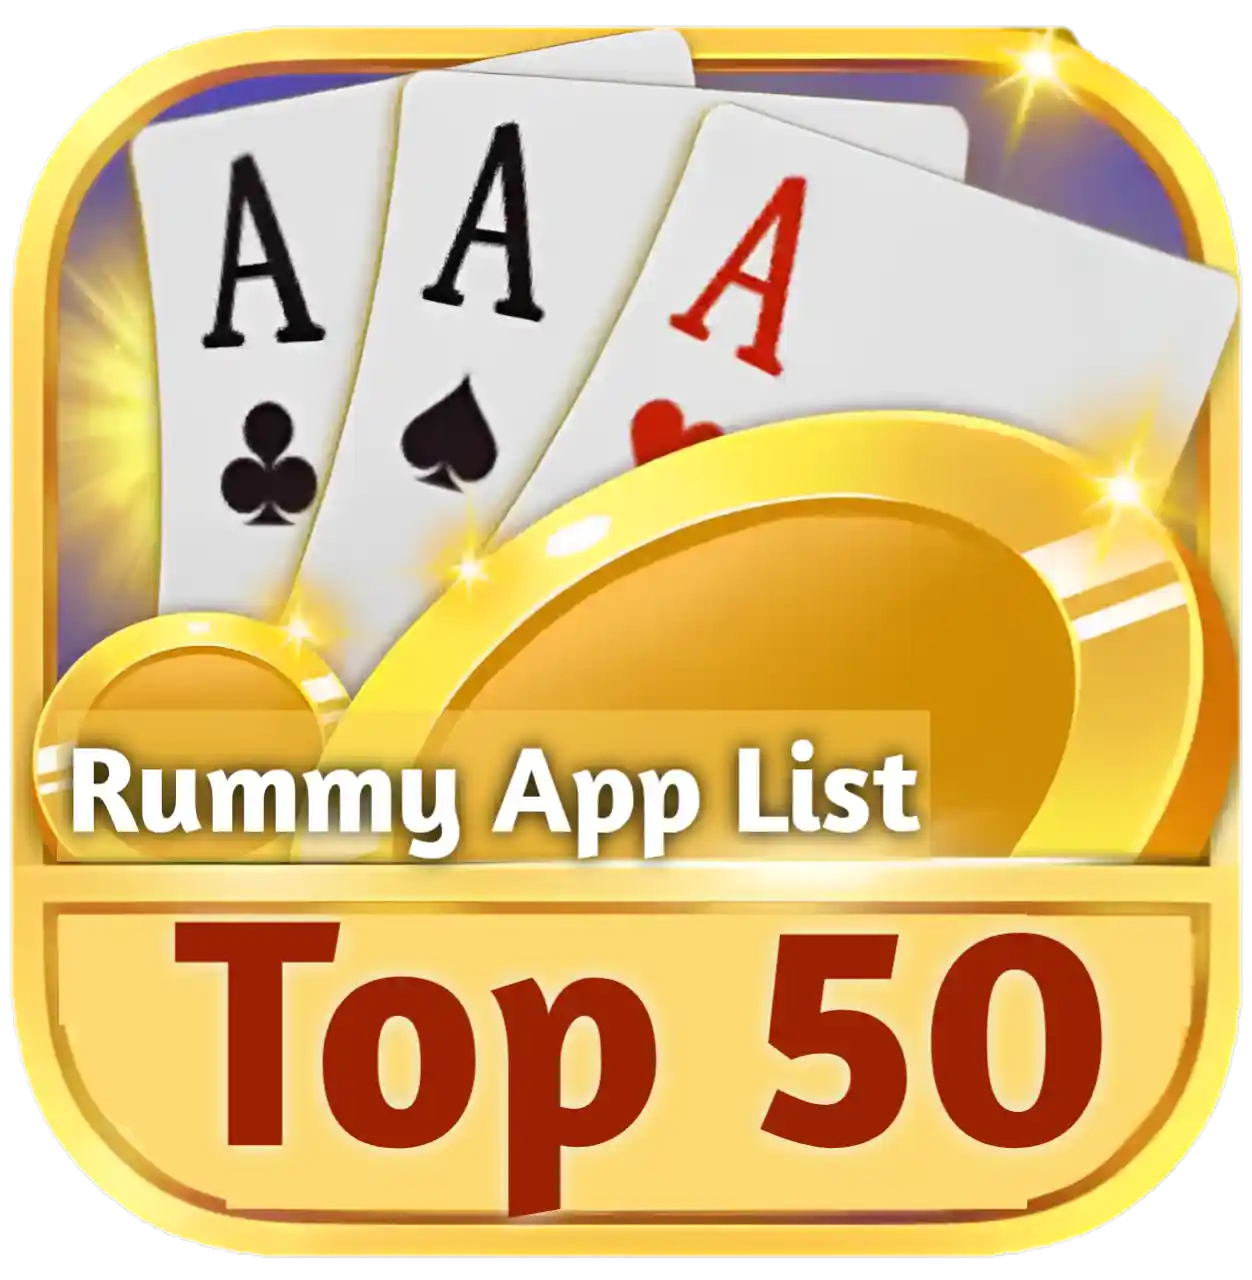 Top 50 Rummy App List India Rummy App List - India Rummy App